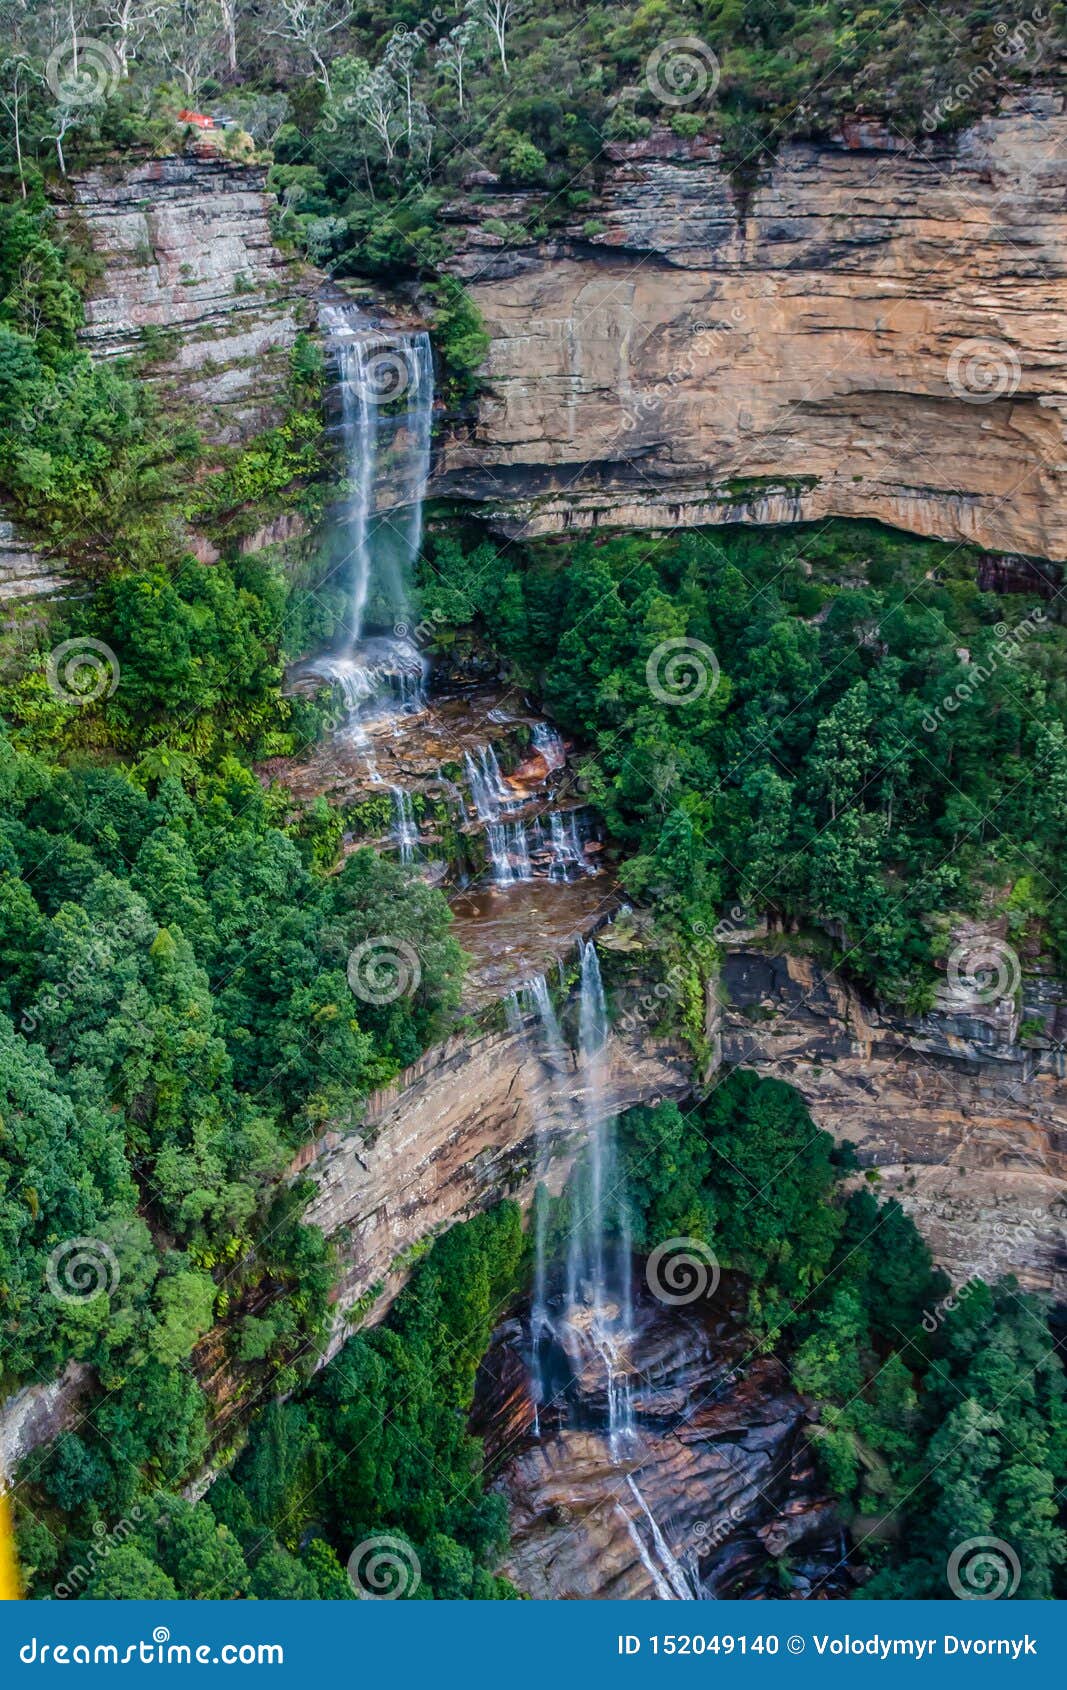 katoomba falls blue mountains tourist park